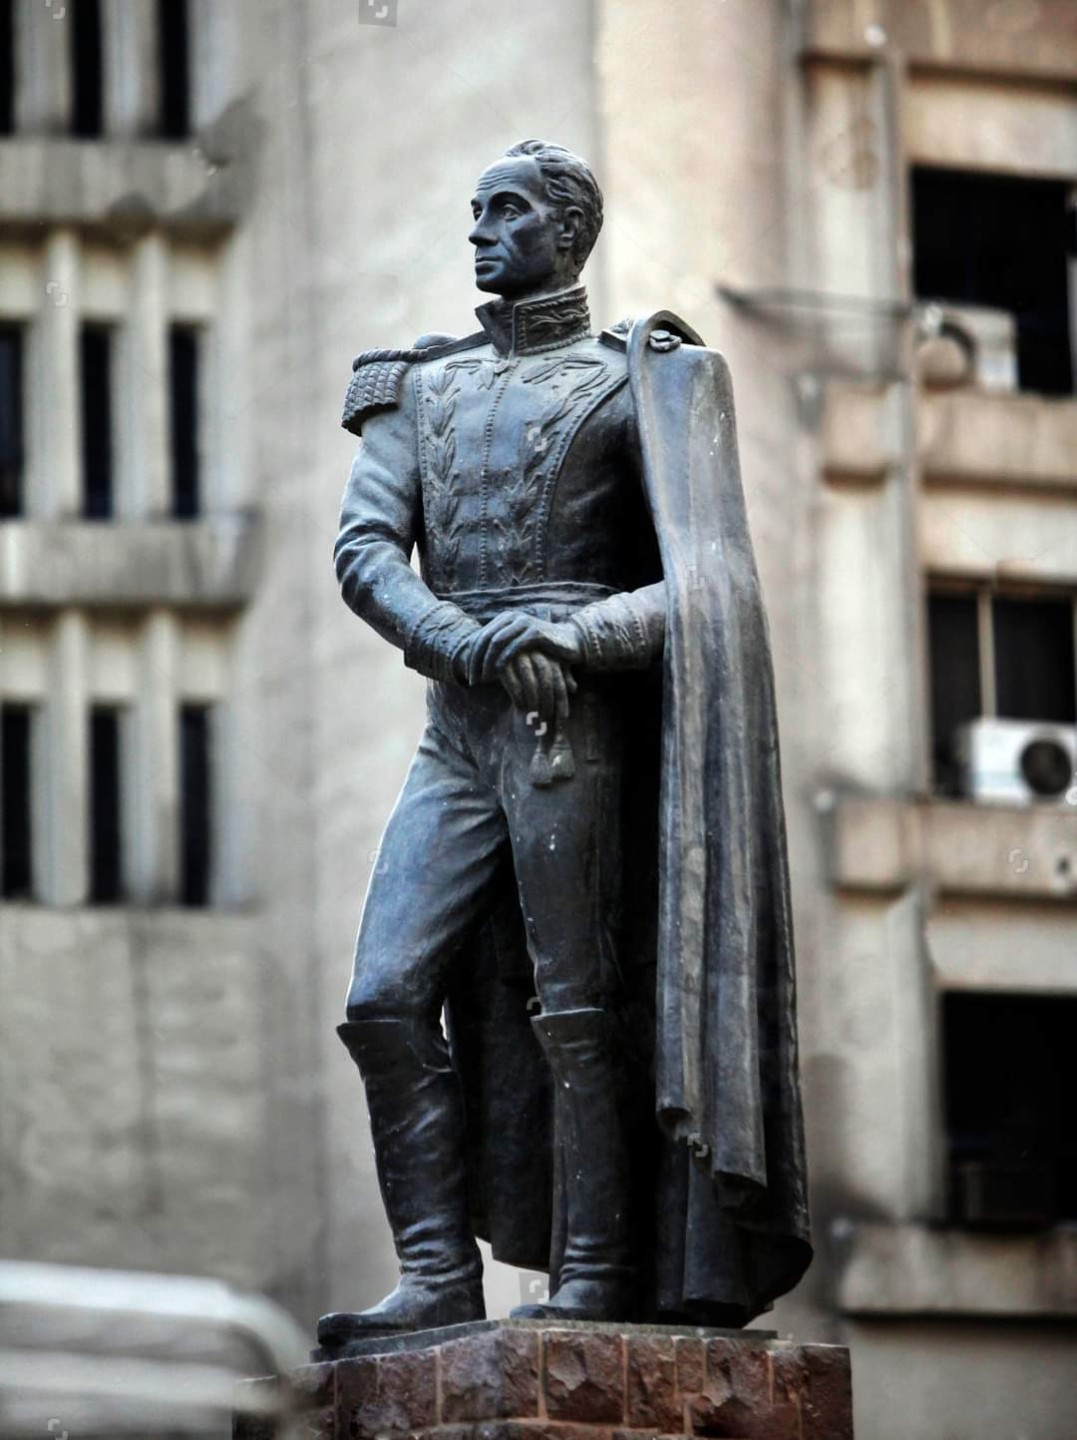 سرقة سيف تمثال سيمون بوليفار